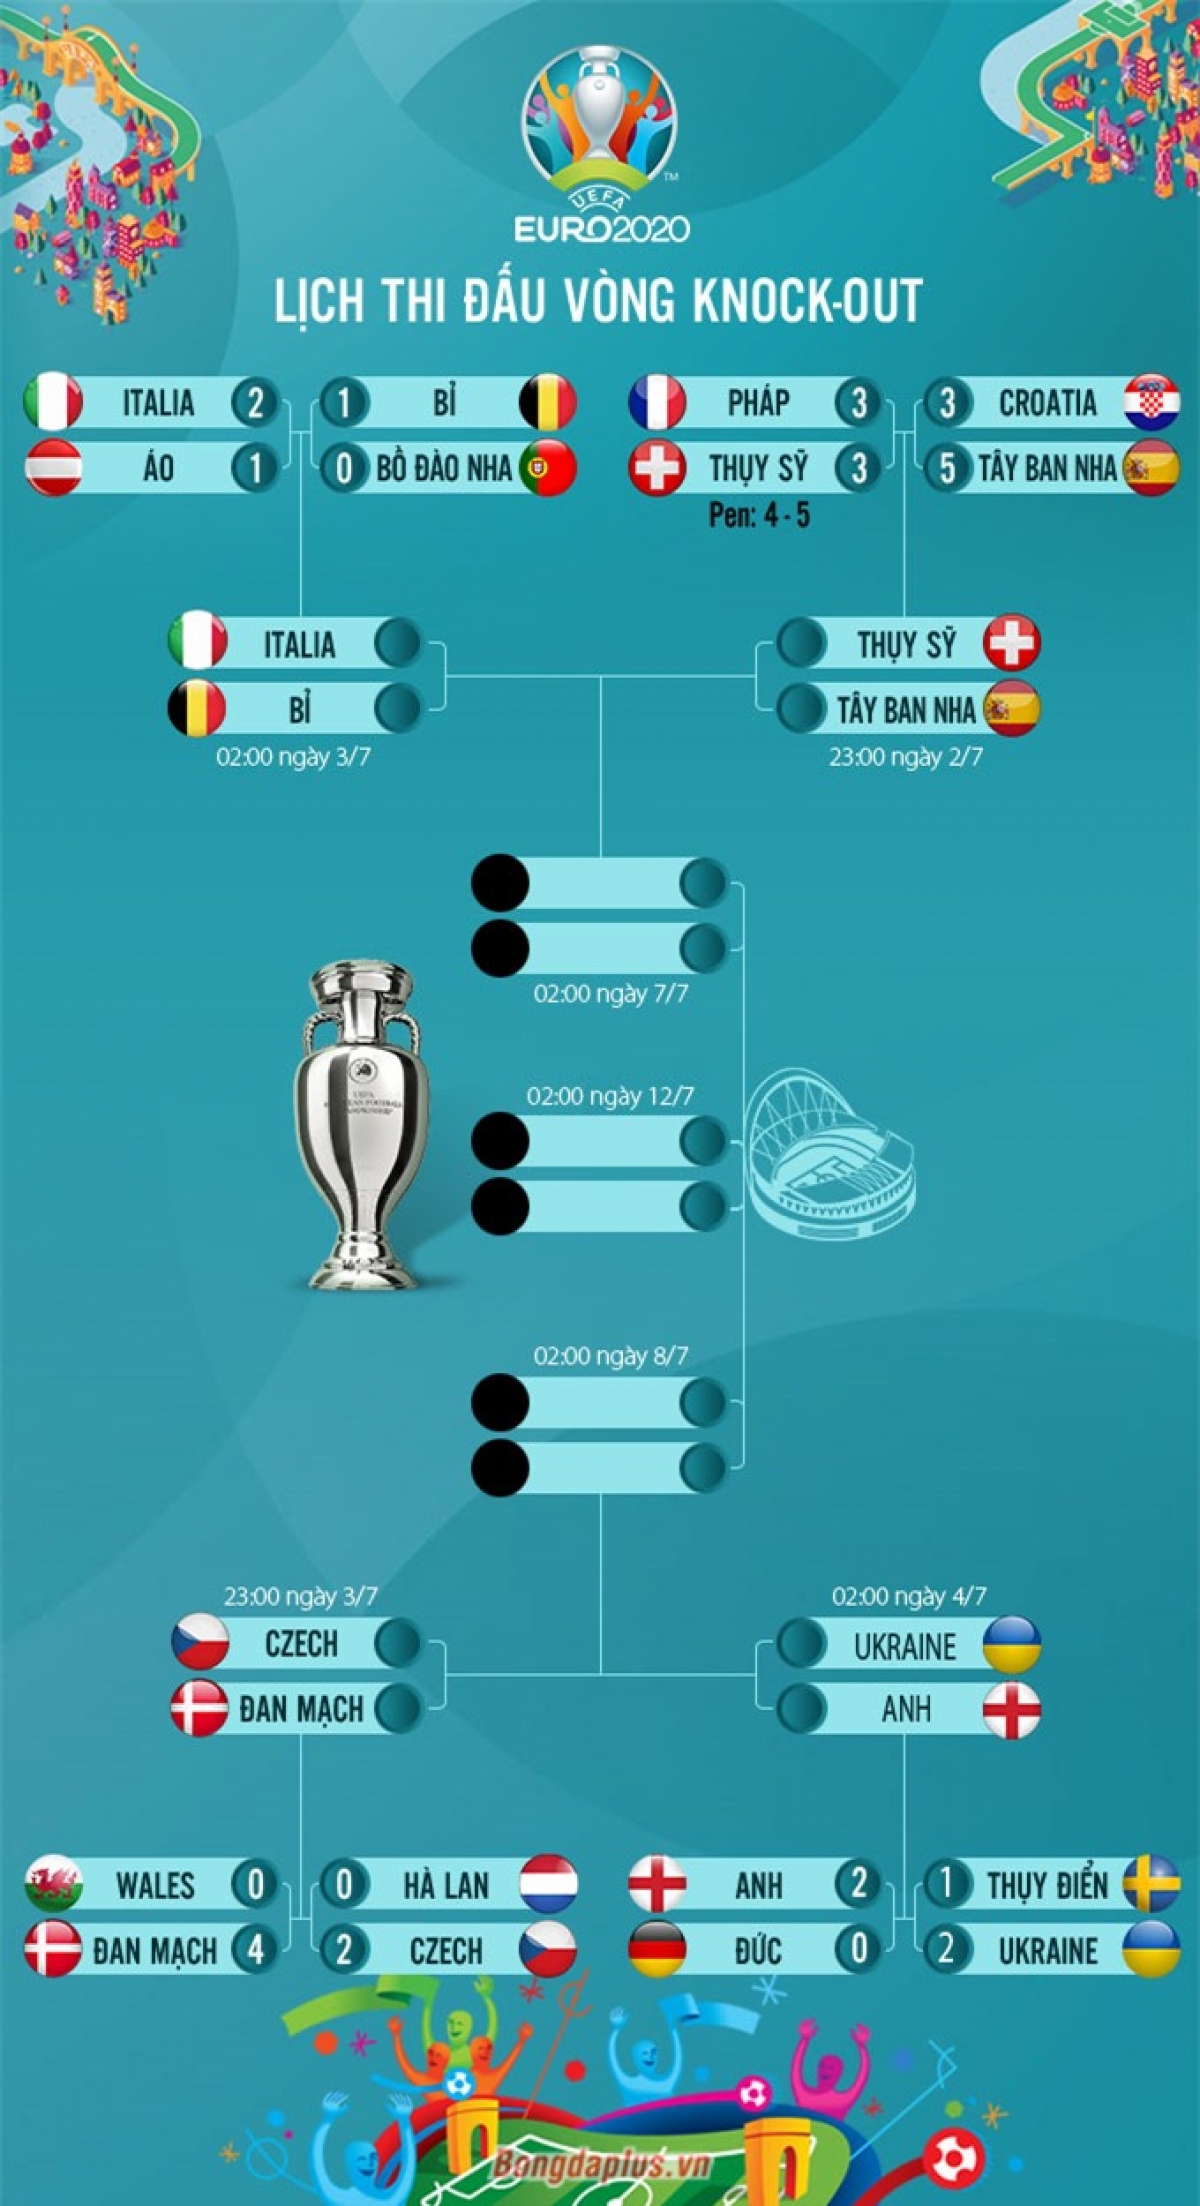 Lịch thi đấu vòng tứ kết Euro 2020 